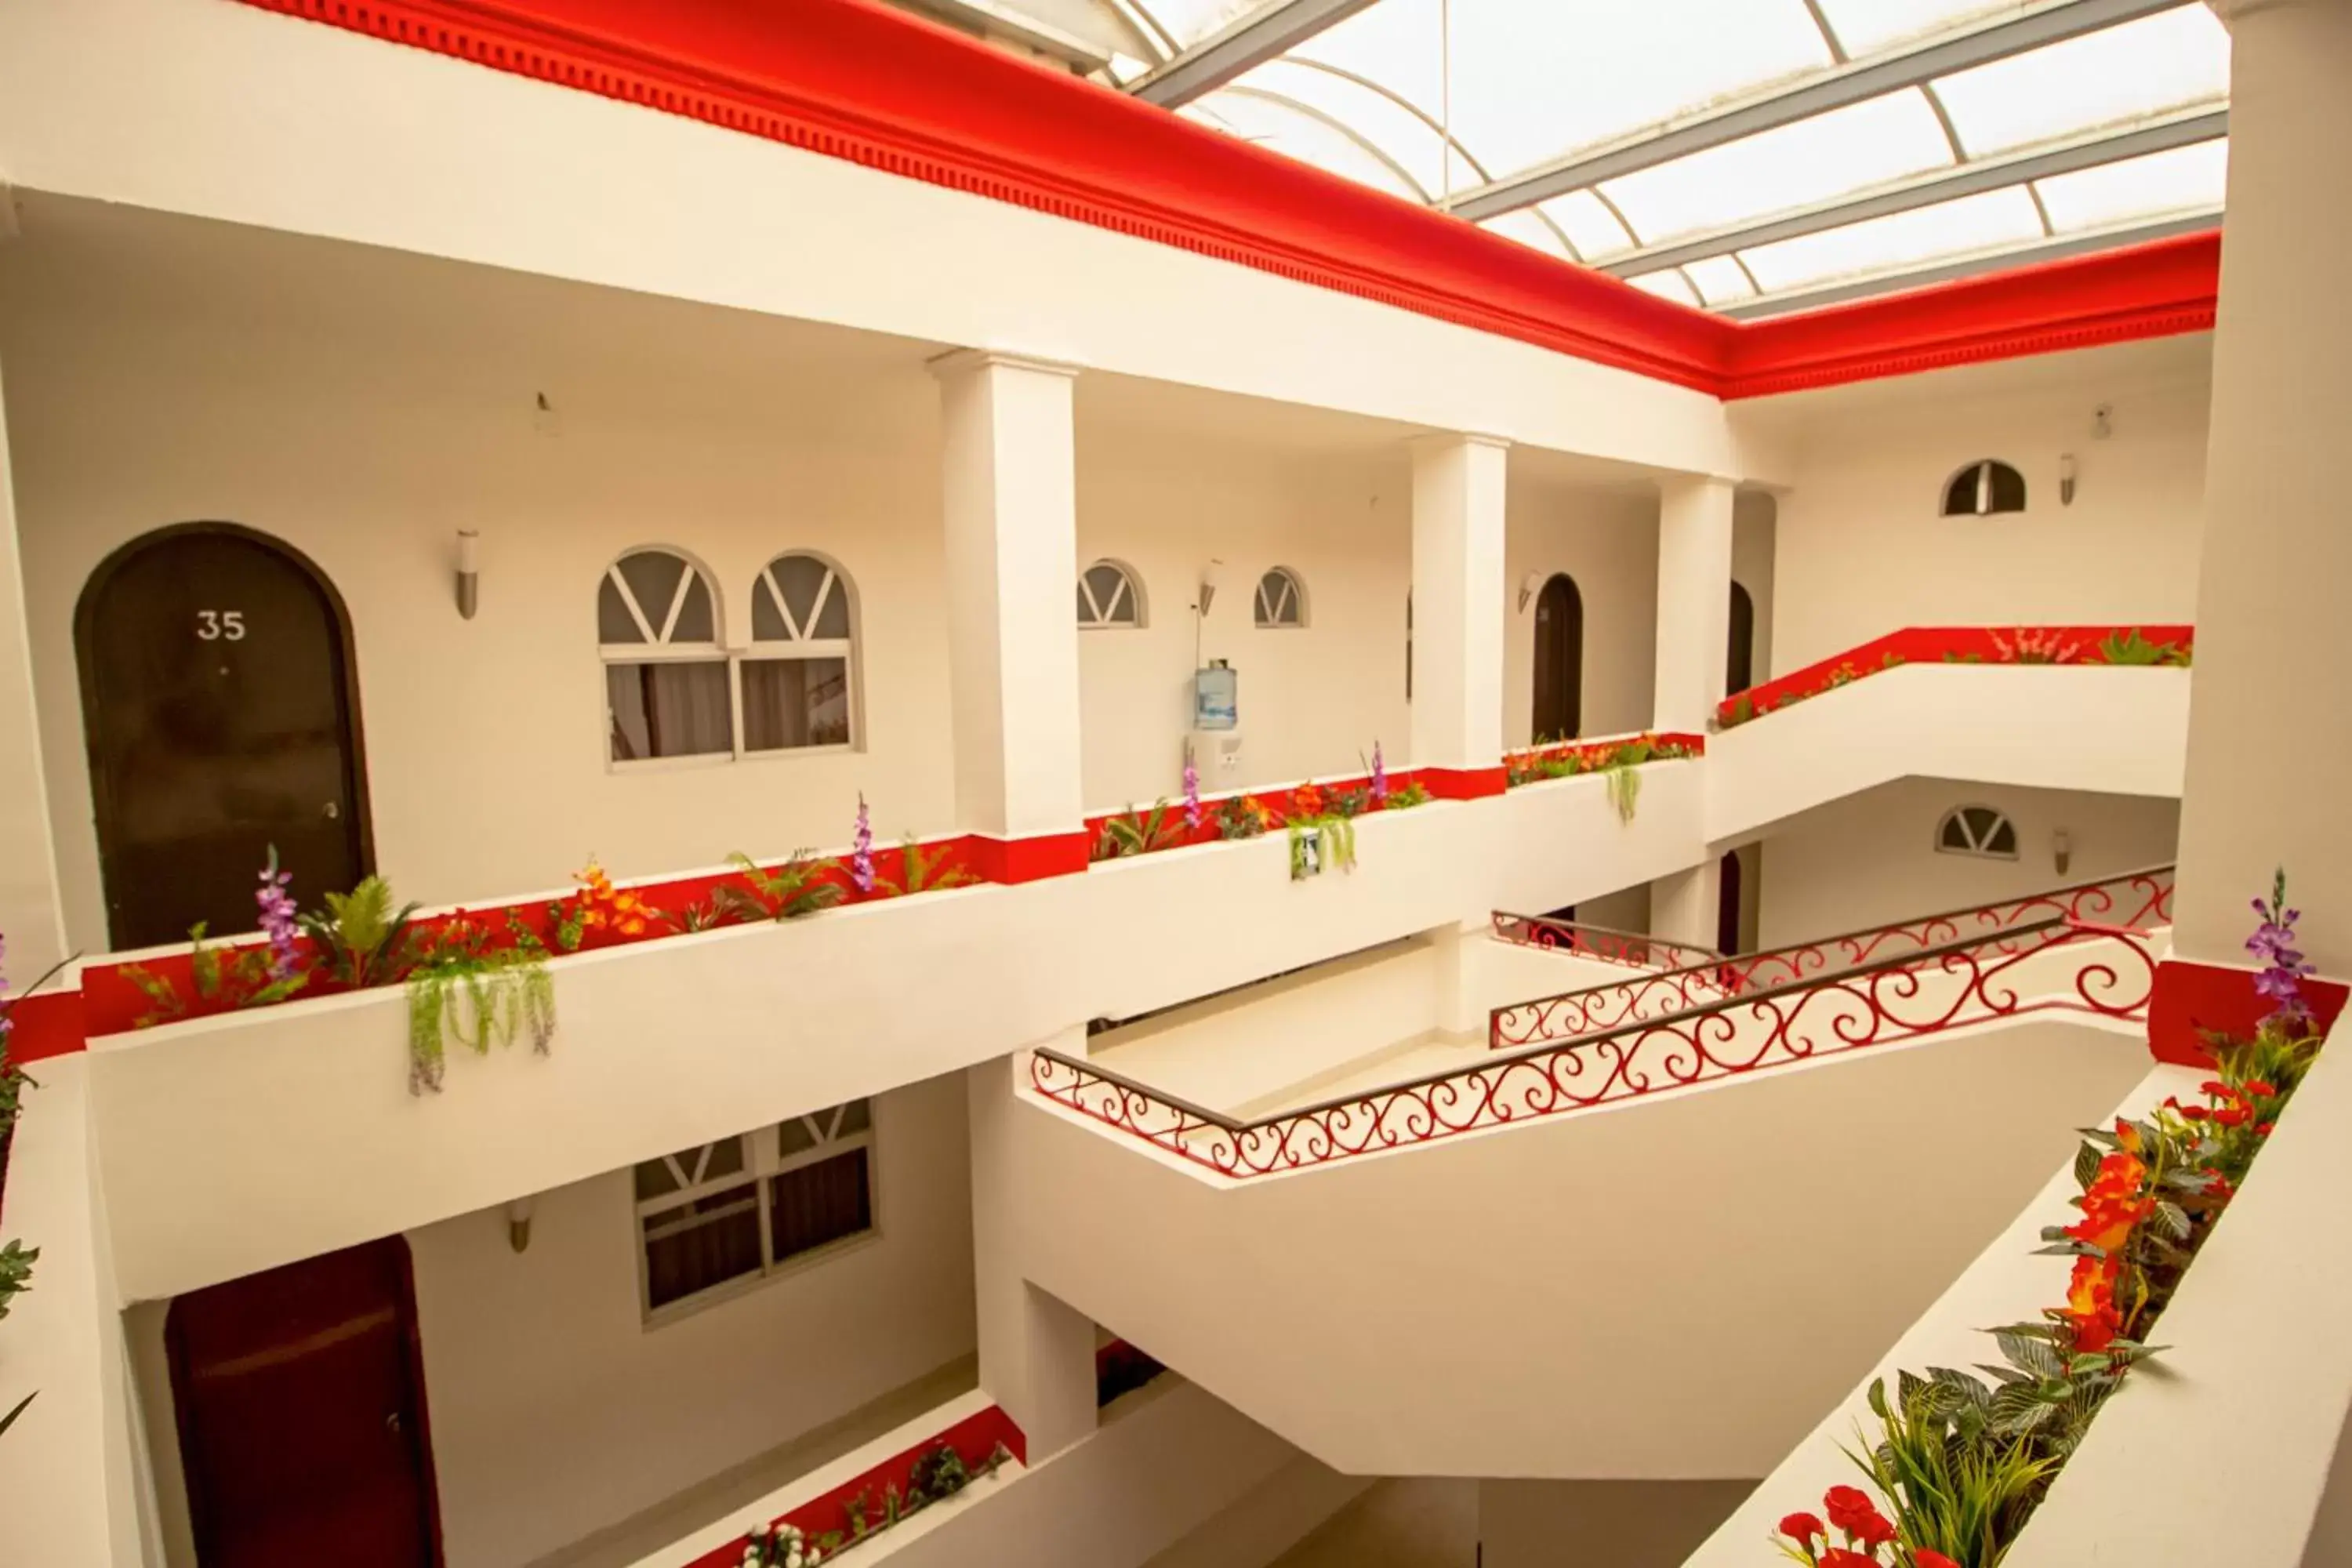 Area and facilities in Hotel El Español Centro Historico